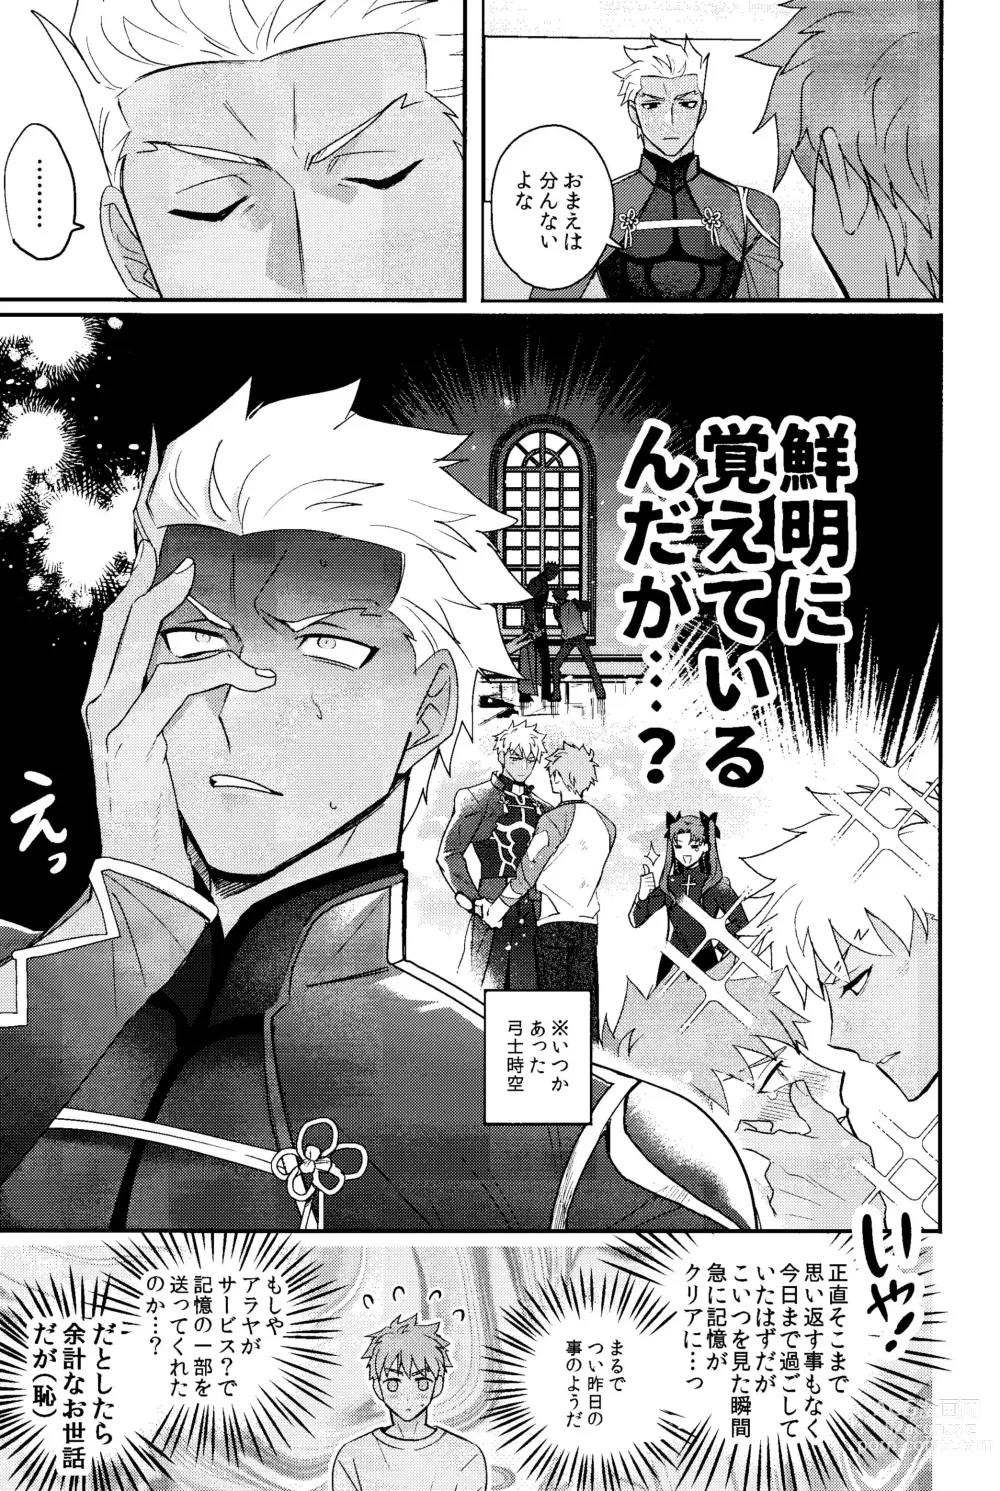 Page 6 of doujinshi Iru